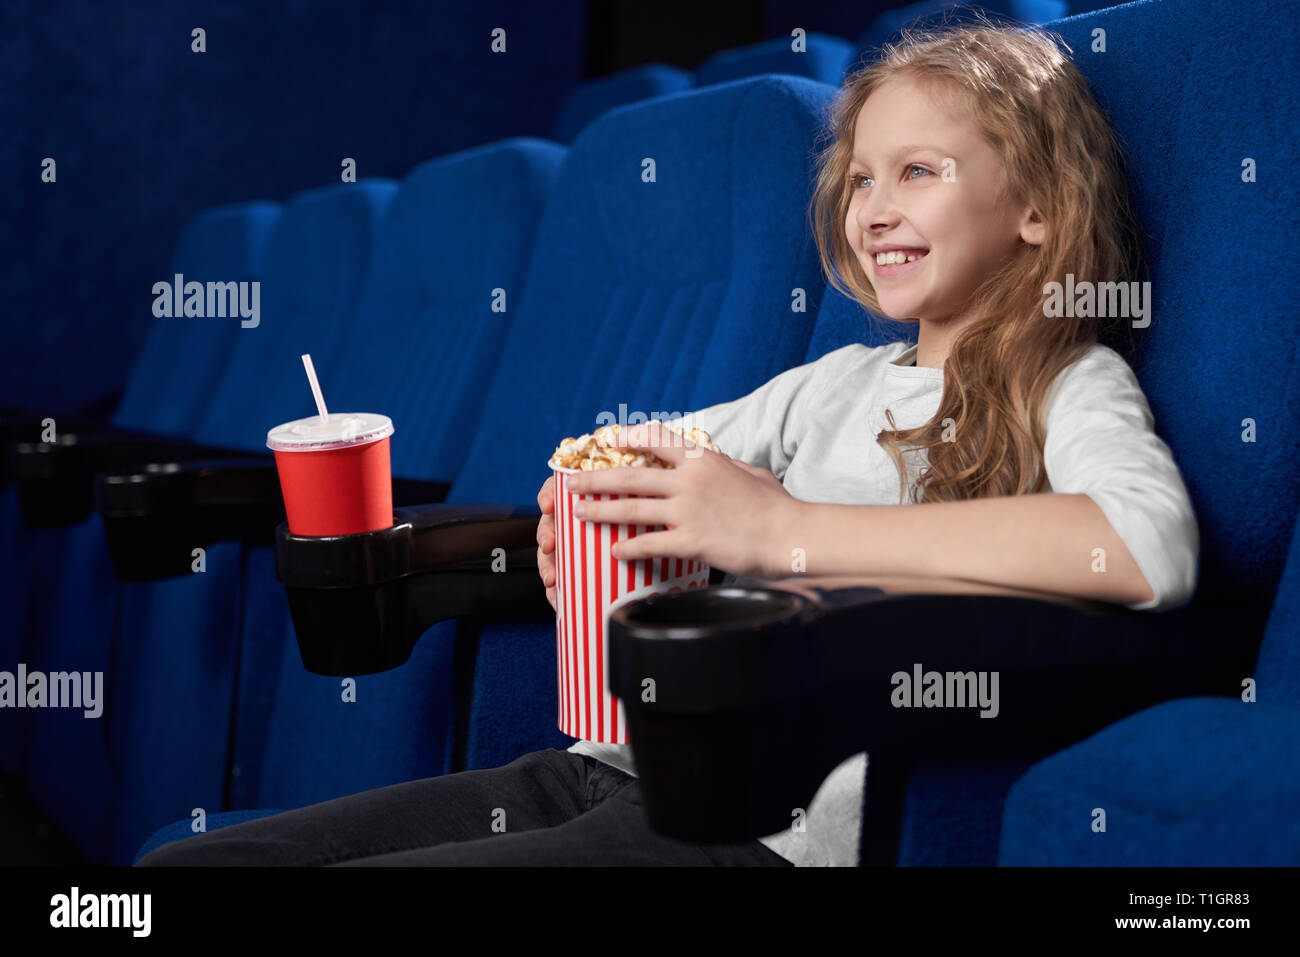 Fröhlicher, lustiger Mädchen, dass Schaufel mit Popcorn, Film oder ein Cartoon in Kino. Schöne blonde Mädchen lächelnd, genießen Film. Stockfoto